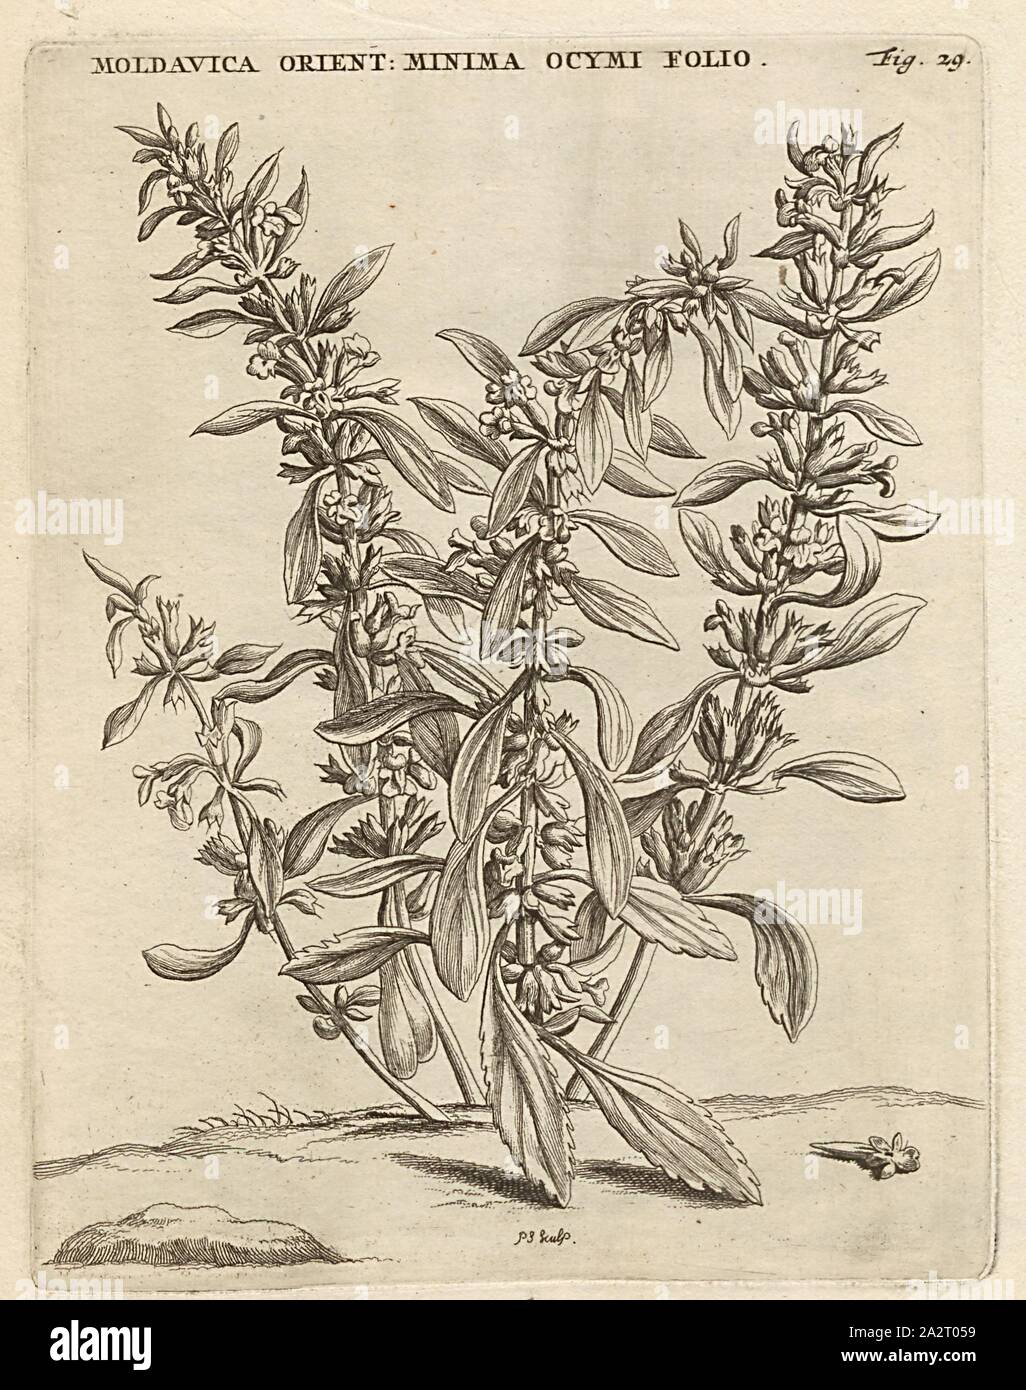 Moldavica Orientalis minima ocymi folio, purple flower, Dracocephalum thymiflorum L, signed: P.S. (sculp.), Fig. 29, p. 28, p. 94, Sluyter, P. (sc.), 1706, Caspari Commelin ... Horti Medici ... plantae rariores et exoticae. Lugduni Batavorum: apud Federicum Haringh, 1706 Stock Photo